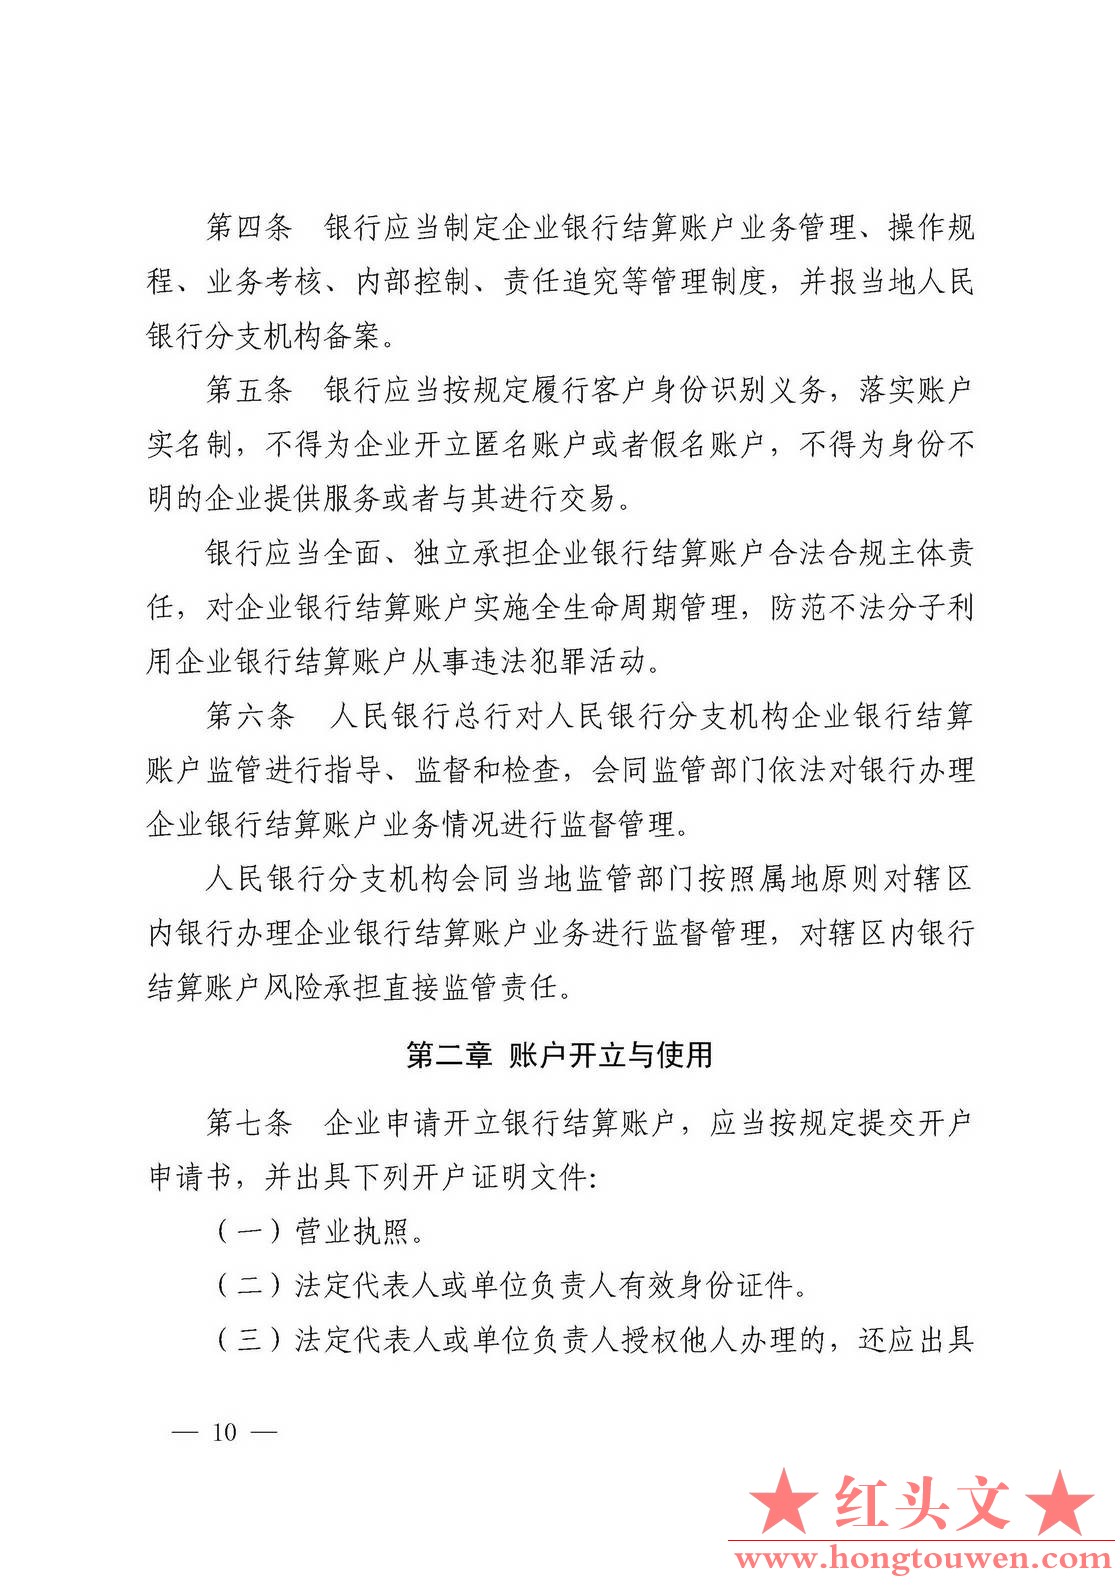 银发[2019]41号-中国人民银行关于取消企业银行账户许可的通知_页面_10.jpg.jpg